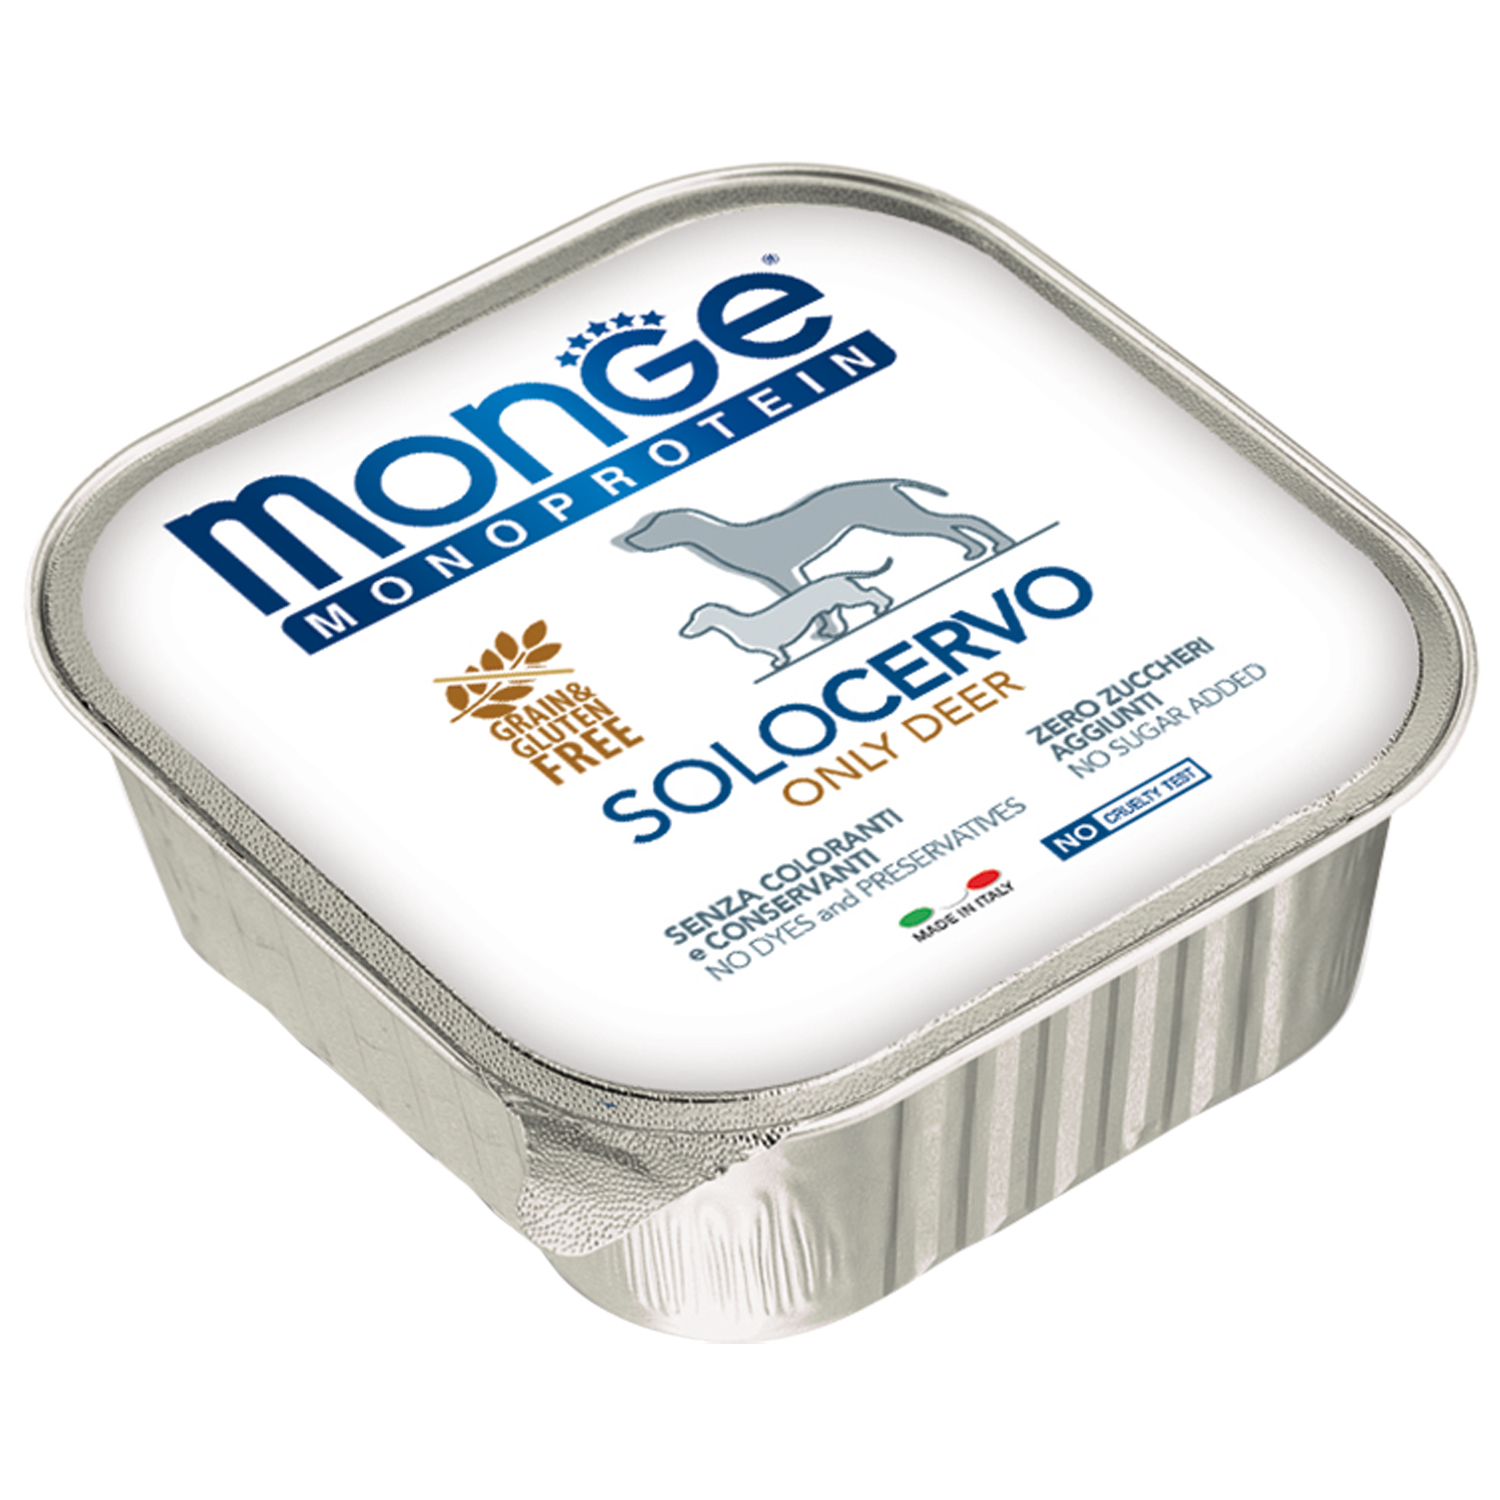 Monge Dog Monoprotein Solo консервы для собак паштет из оленины 150г